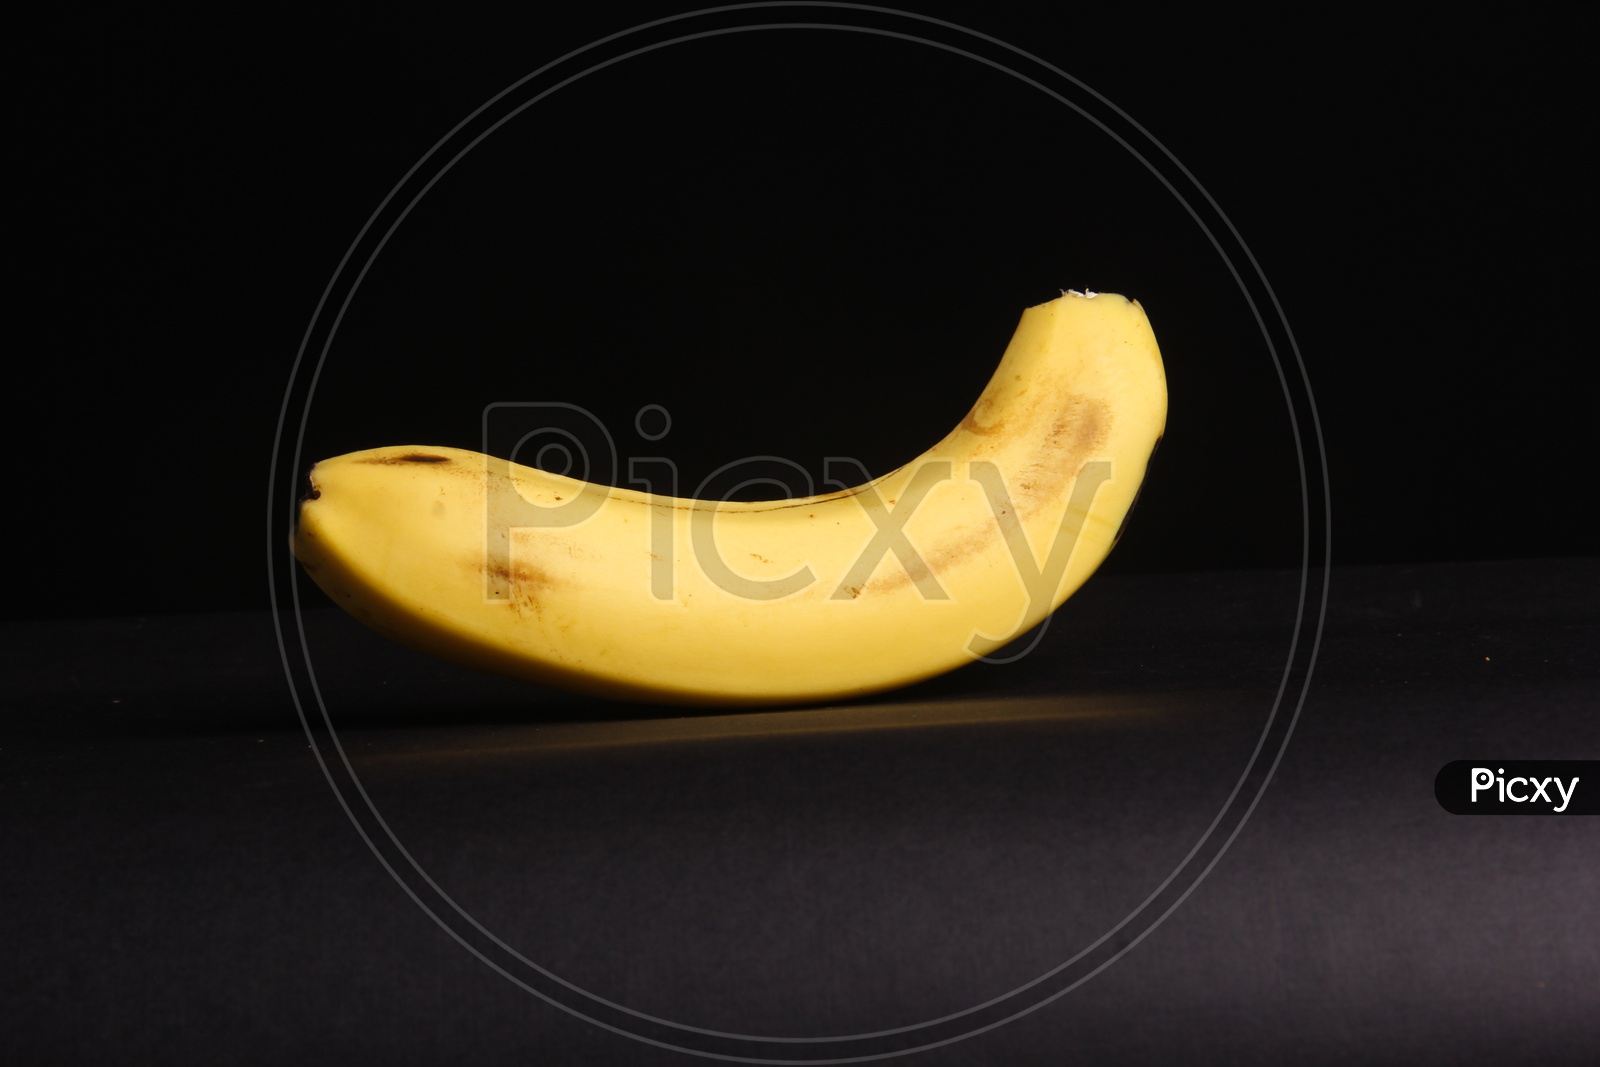 Yellow Banana - Fruit